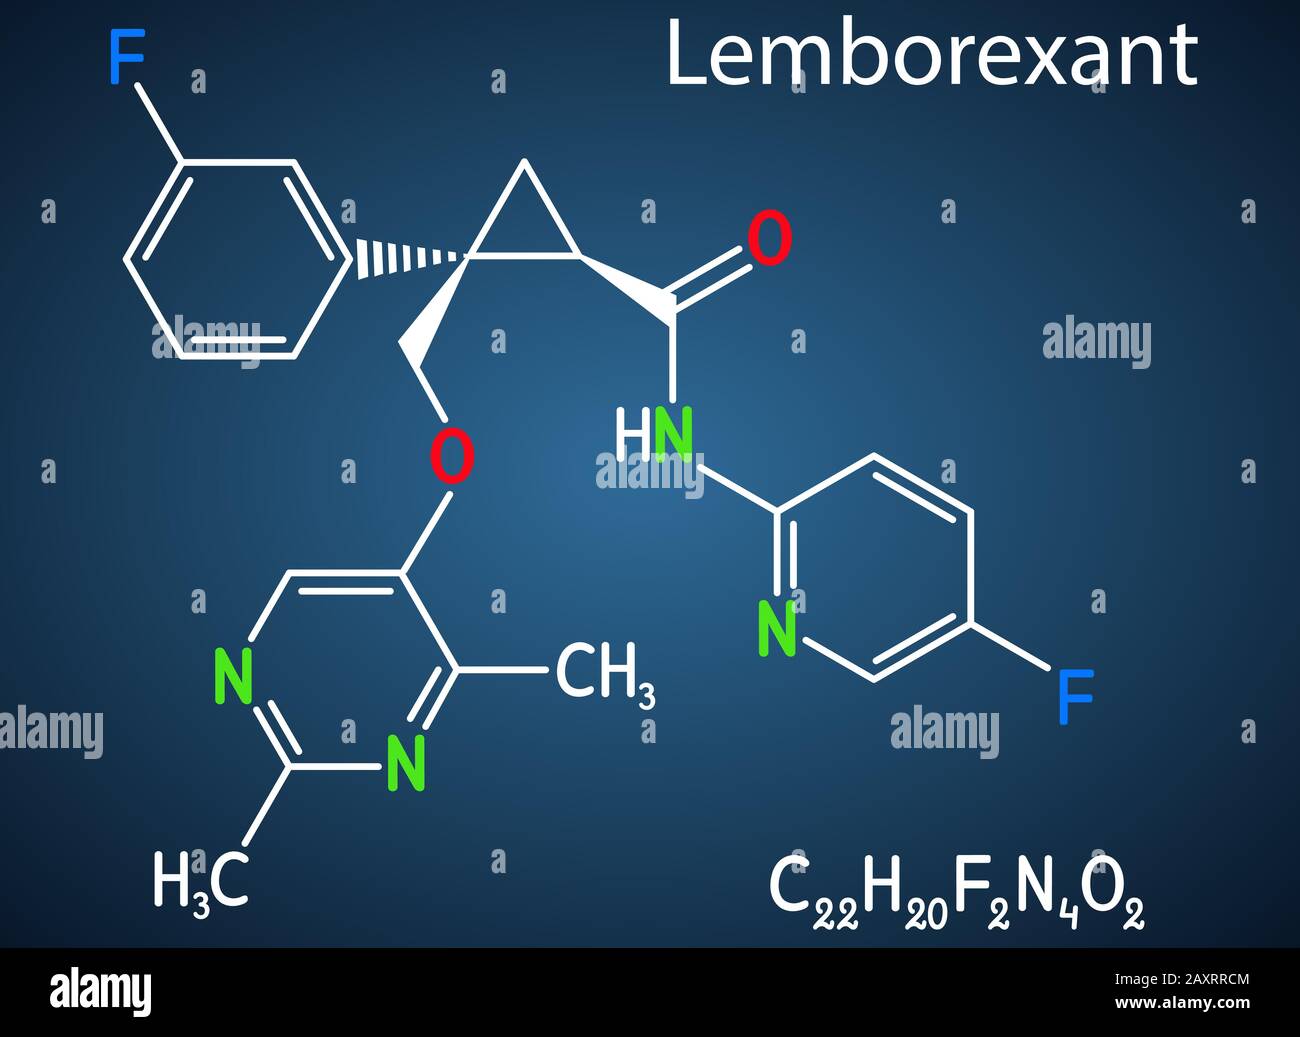 Lemborexant, C22H20F2N4O2-Molekül. Es handelt sich um einen Dual-Orexin-Rezeptor-Antagonisten, der bei der Behandlung von Schlaflosigkeit verwendet wird. Strukturelle chemische Formel auf der dunklen B. Stock Vektor